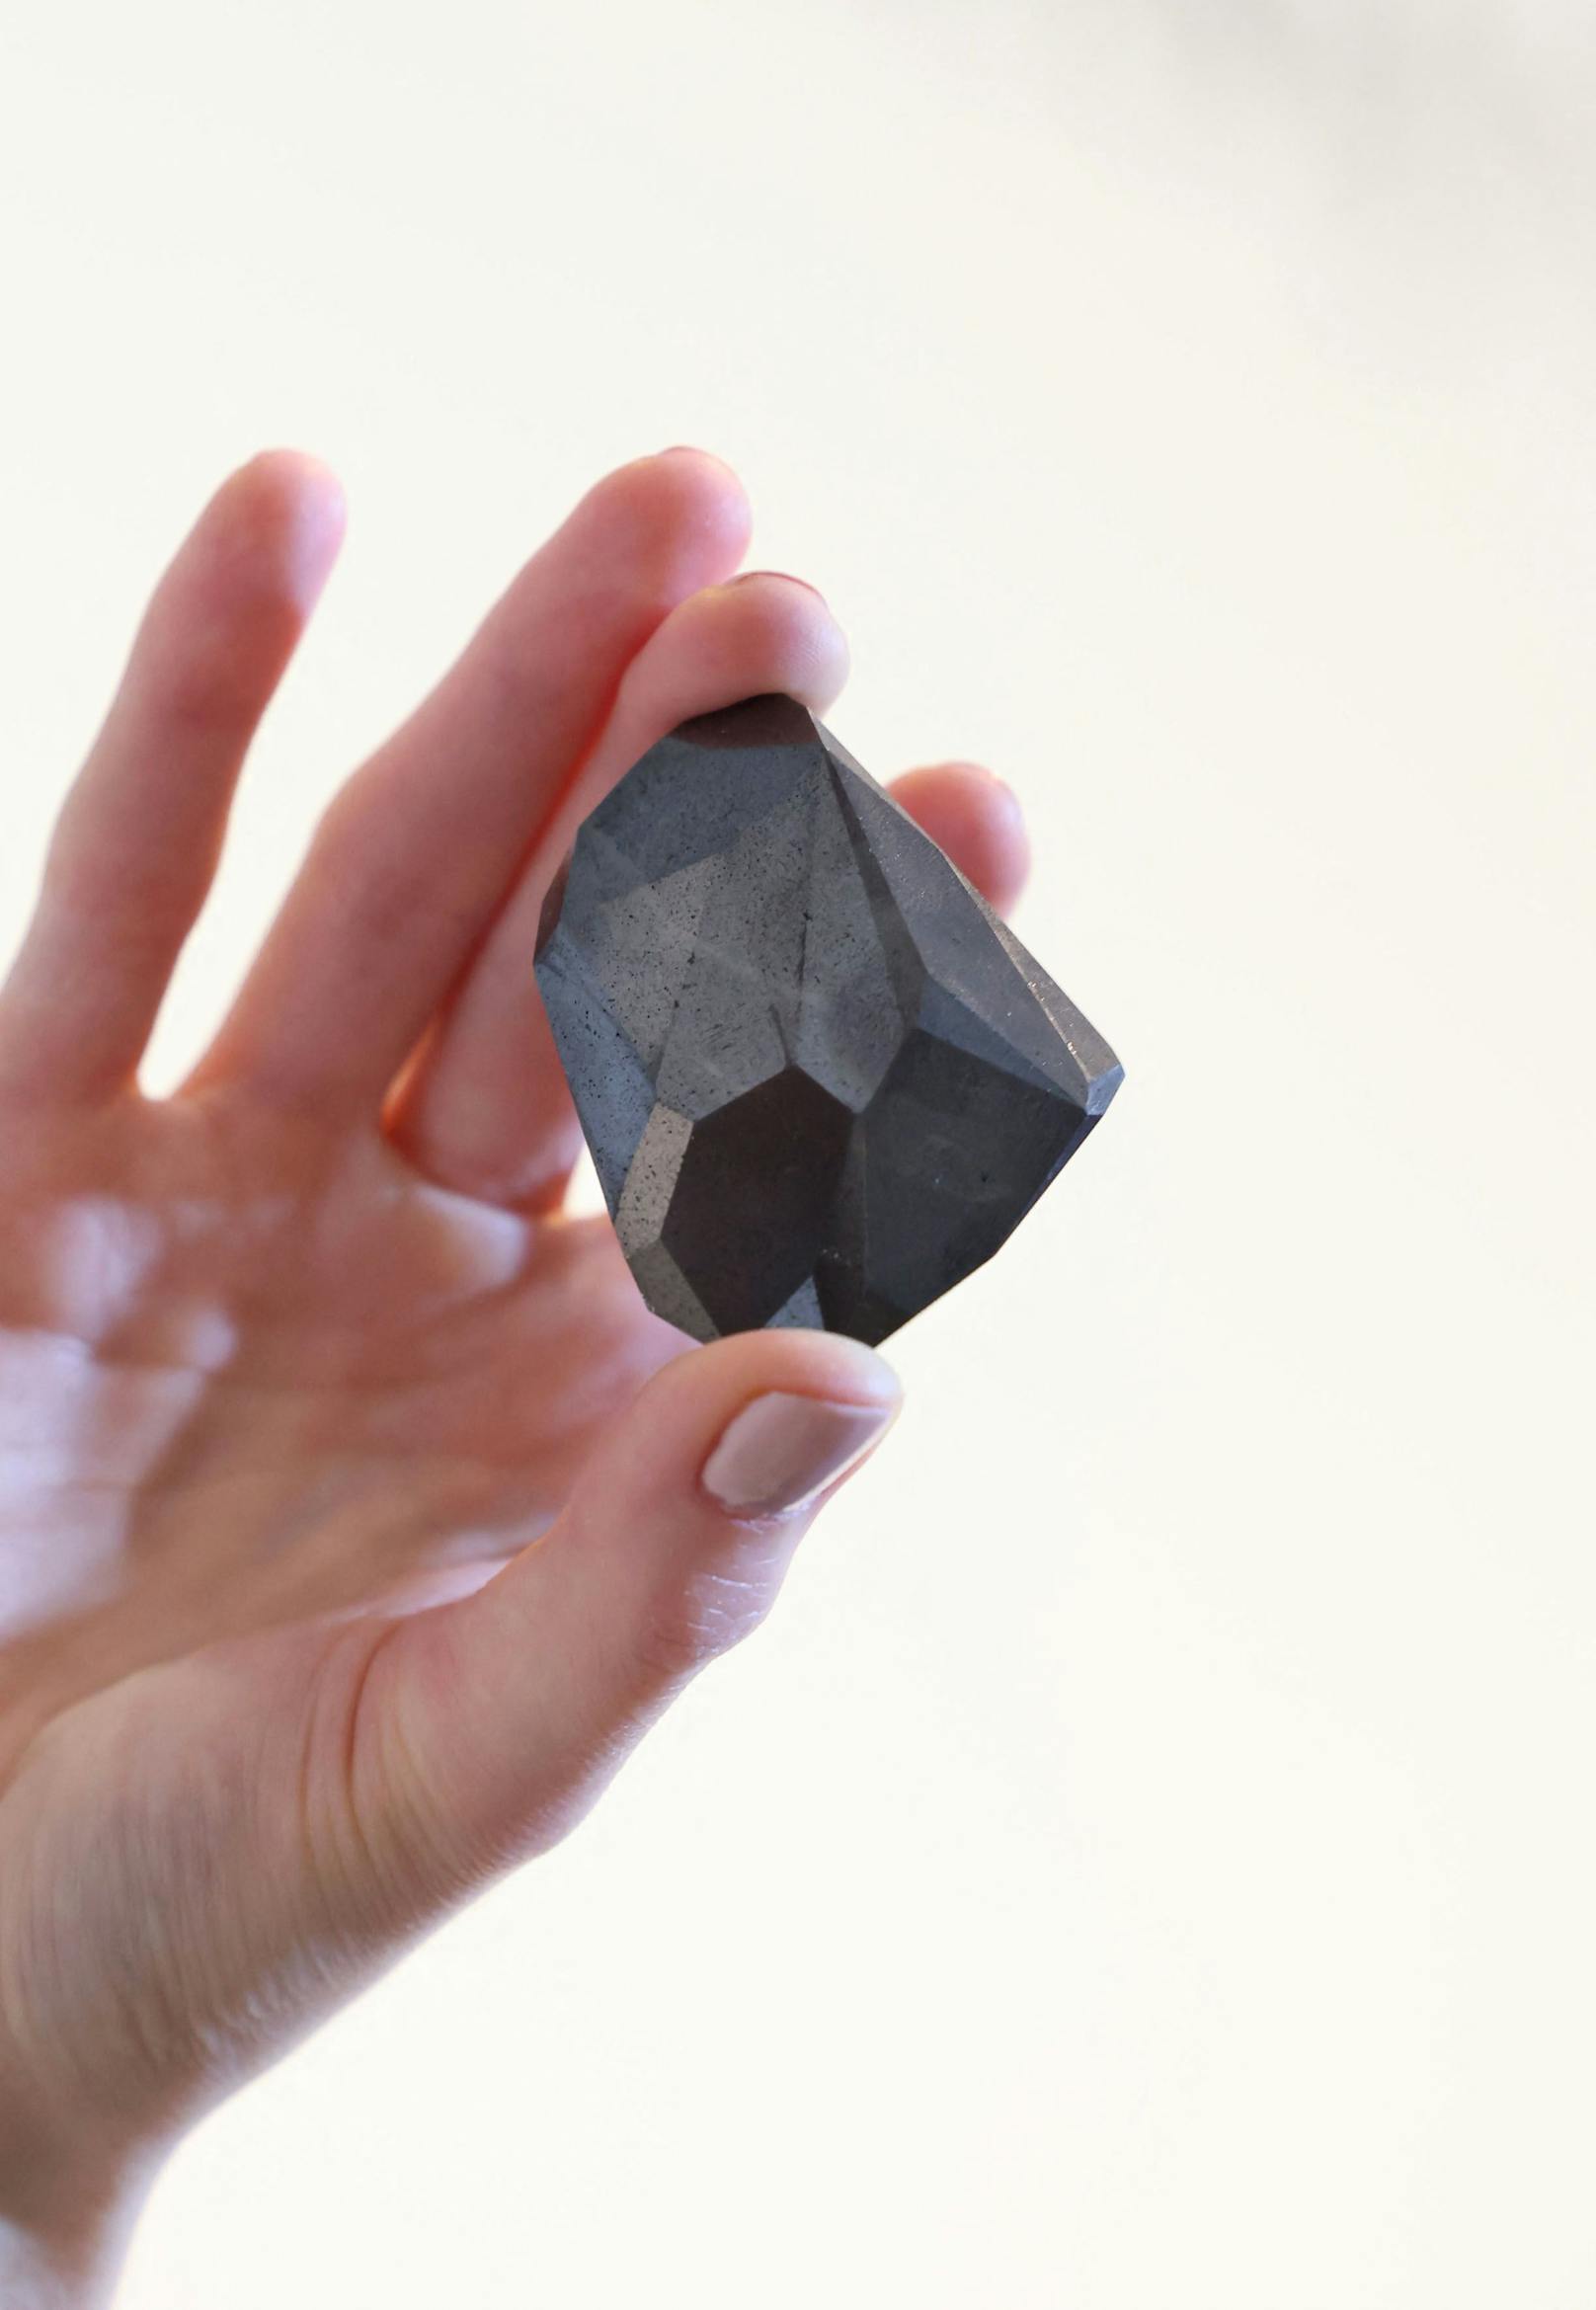 Es wird spekuliert, dass der seltene schwarze oder Carbonado-Diamant entstanden ist, als ein Meteorit oder Asteroid vor mehr als 2,6 Milliarden Jahren die Erde traf.